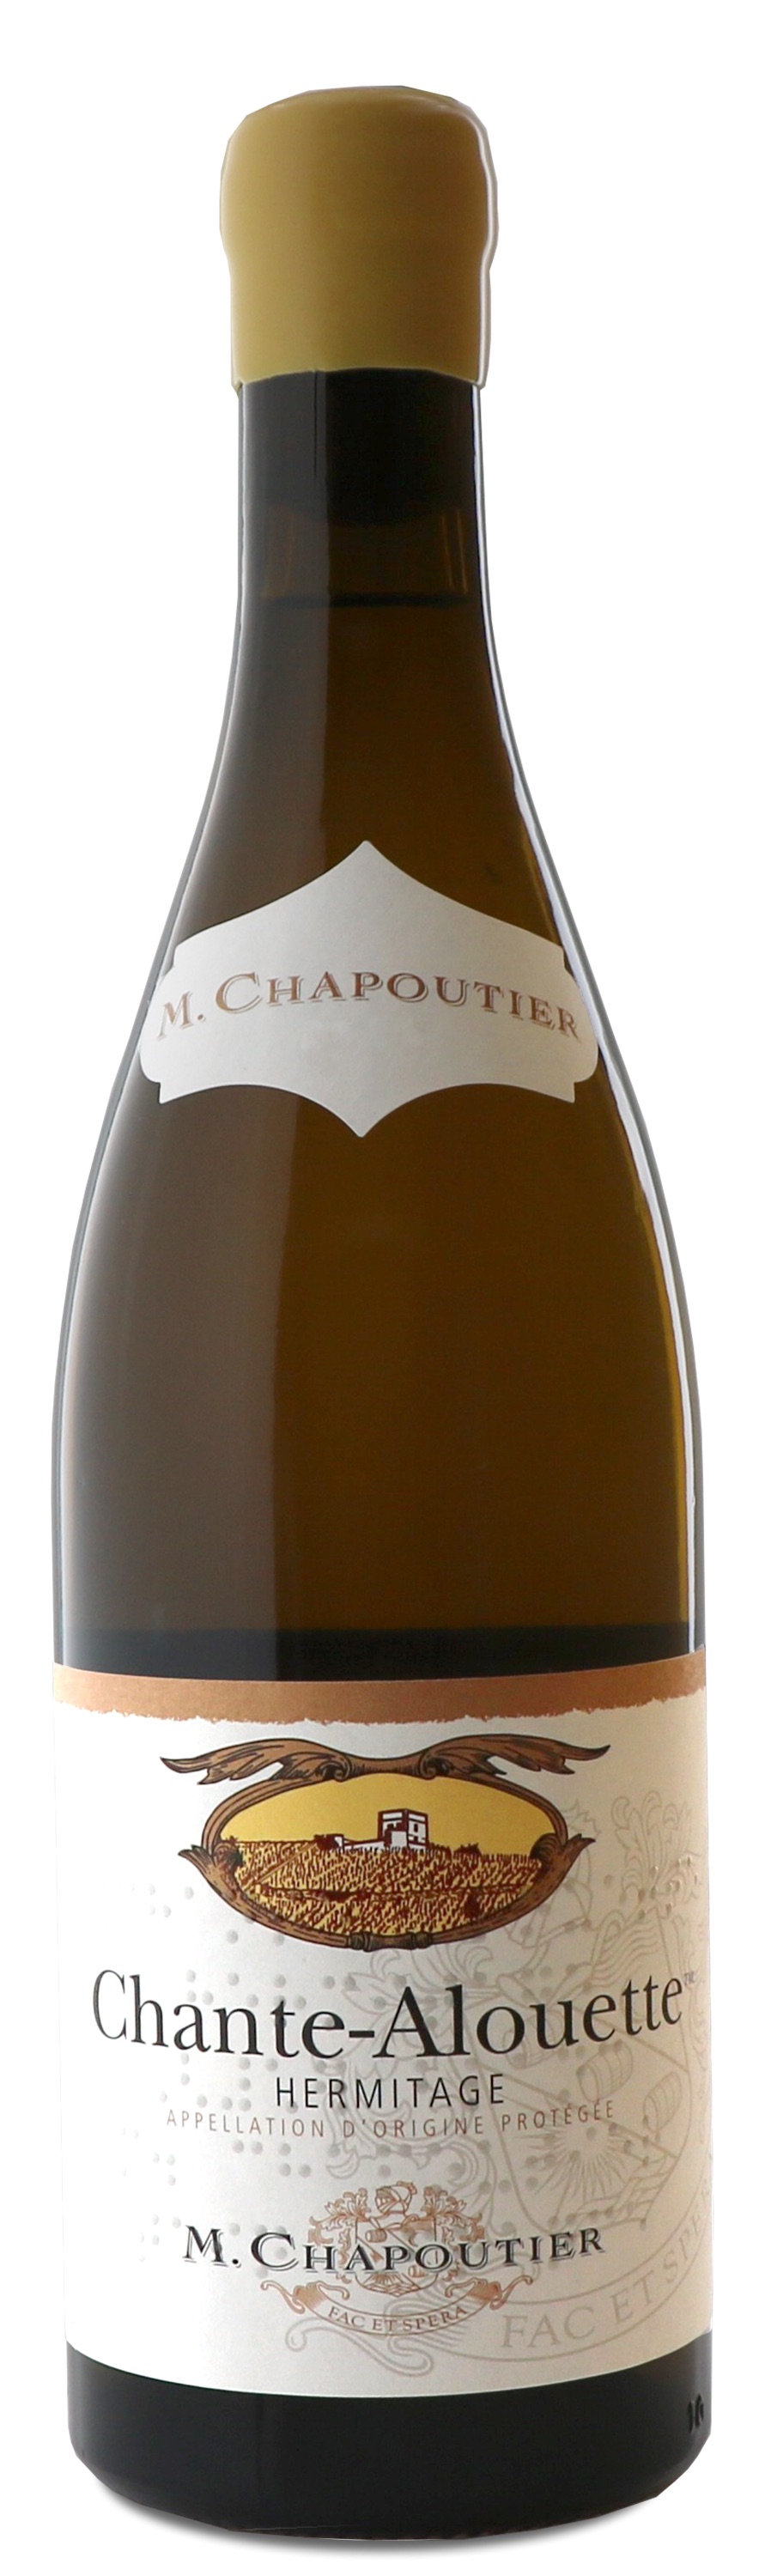 M. Chapoutier - Hermitage Chante-Alouette 2018 (750)